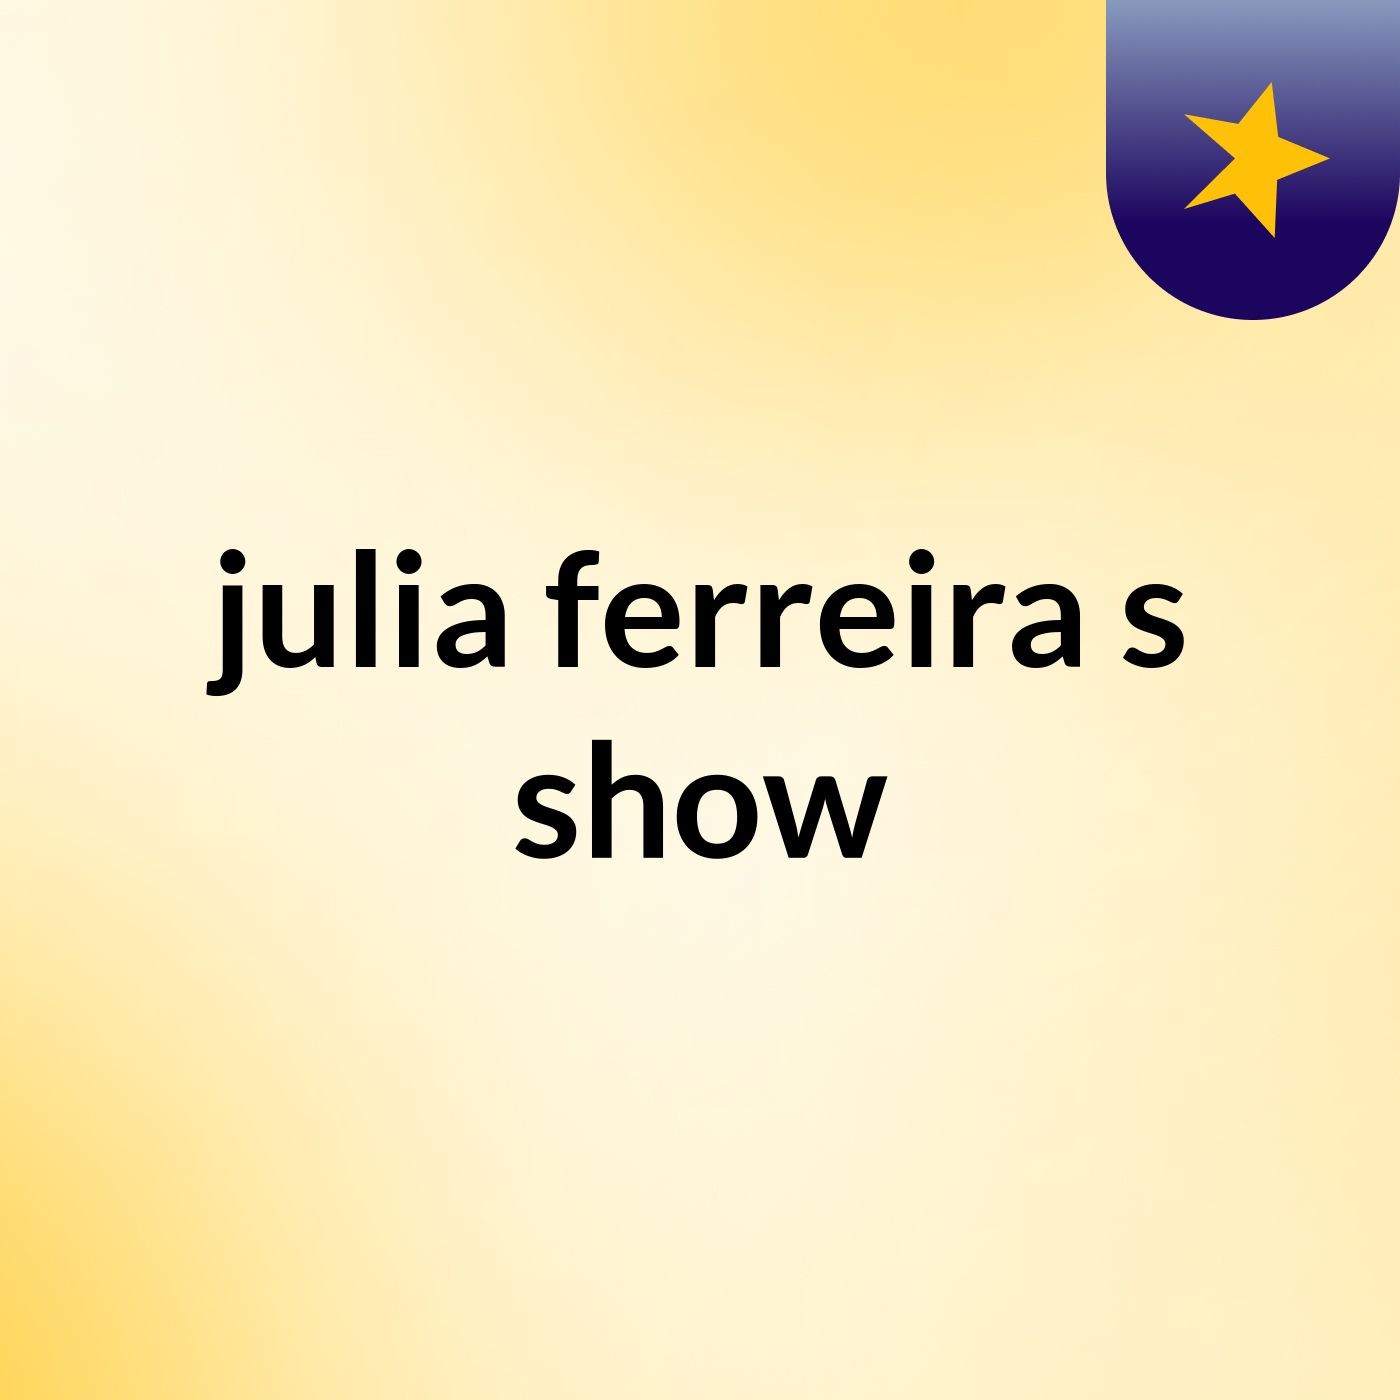 julia ferreira's show